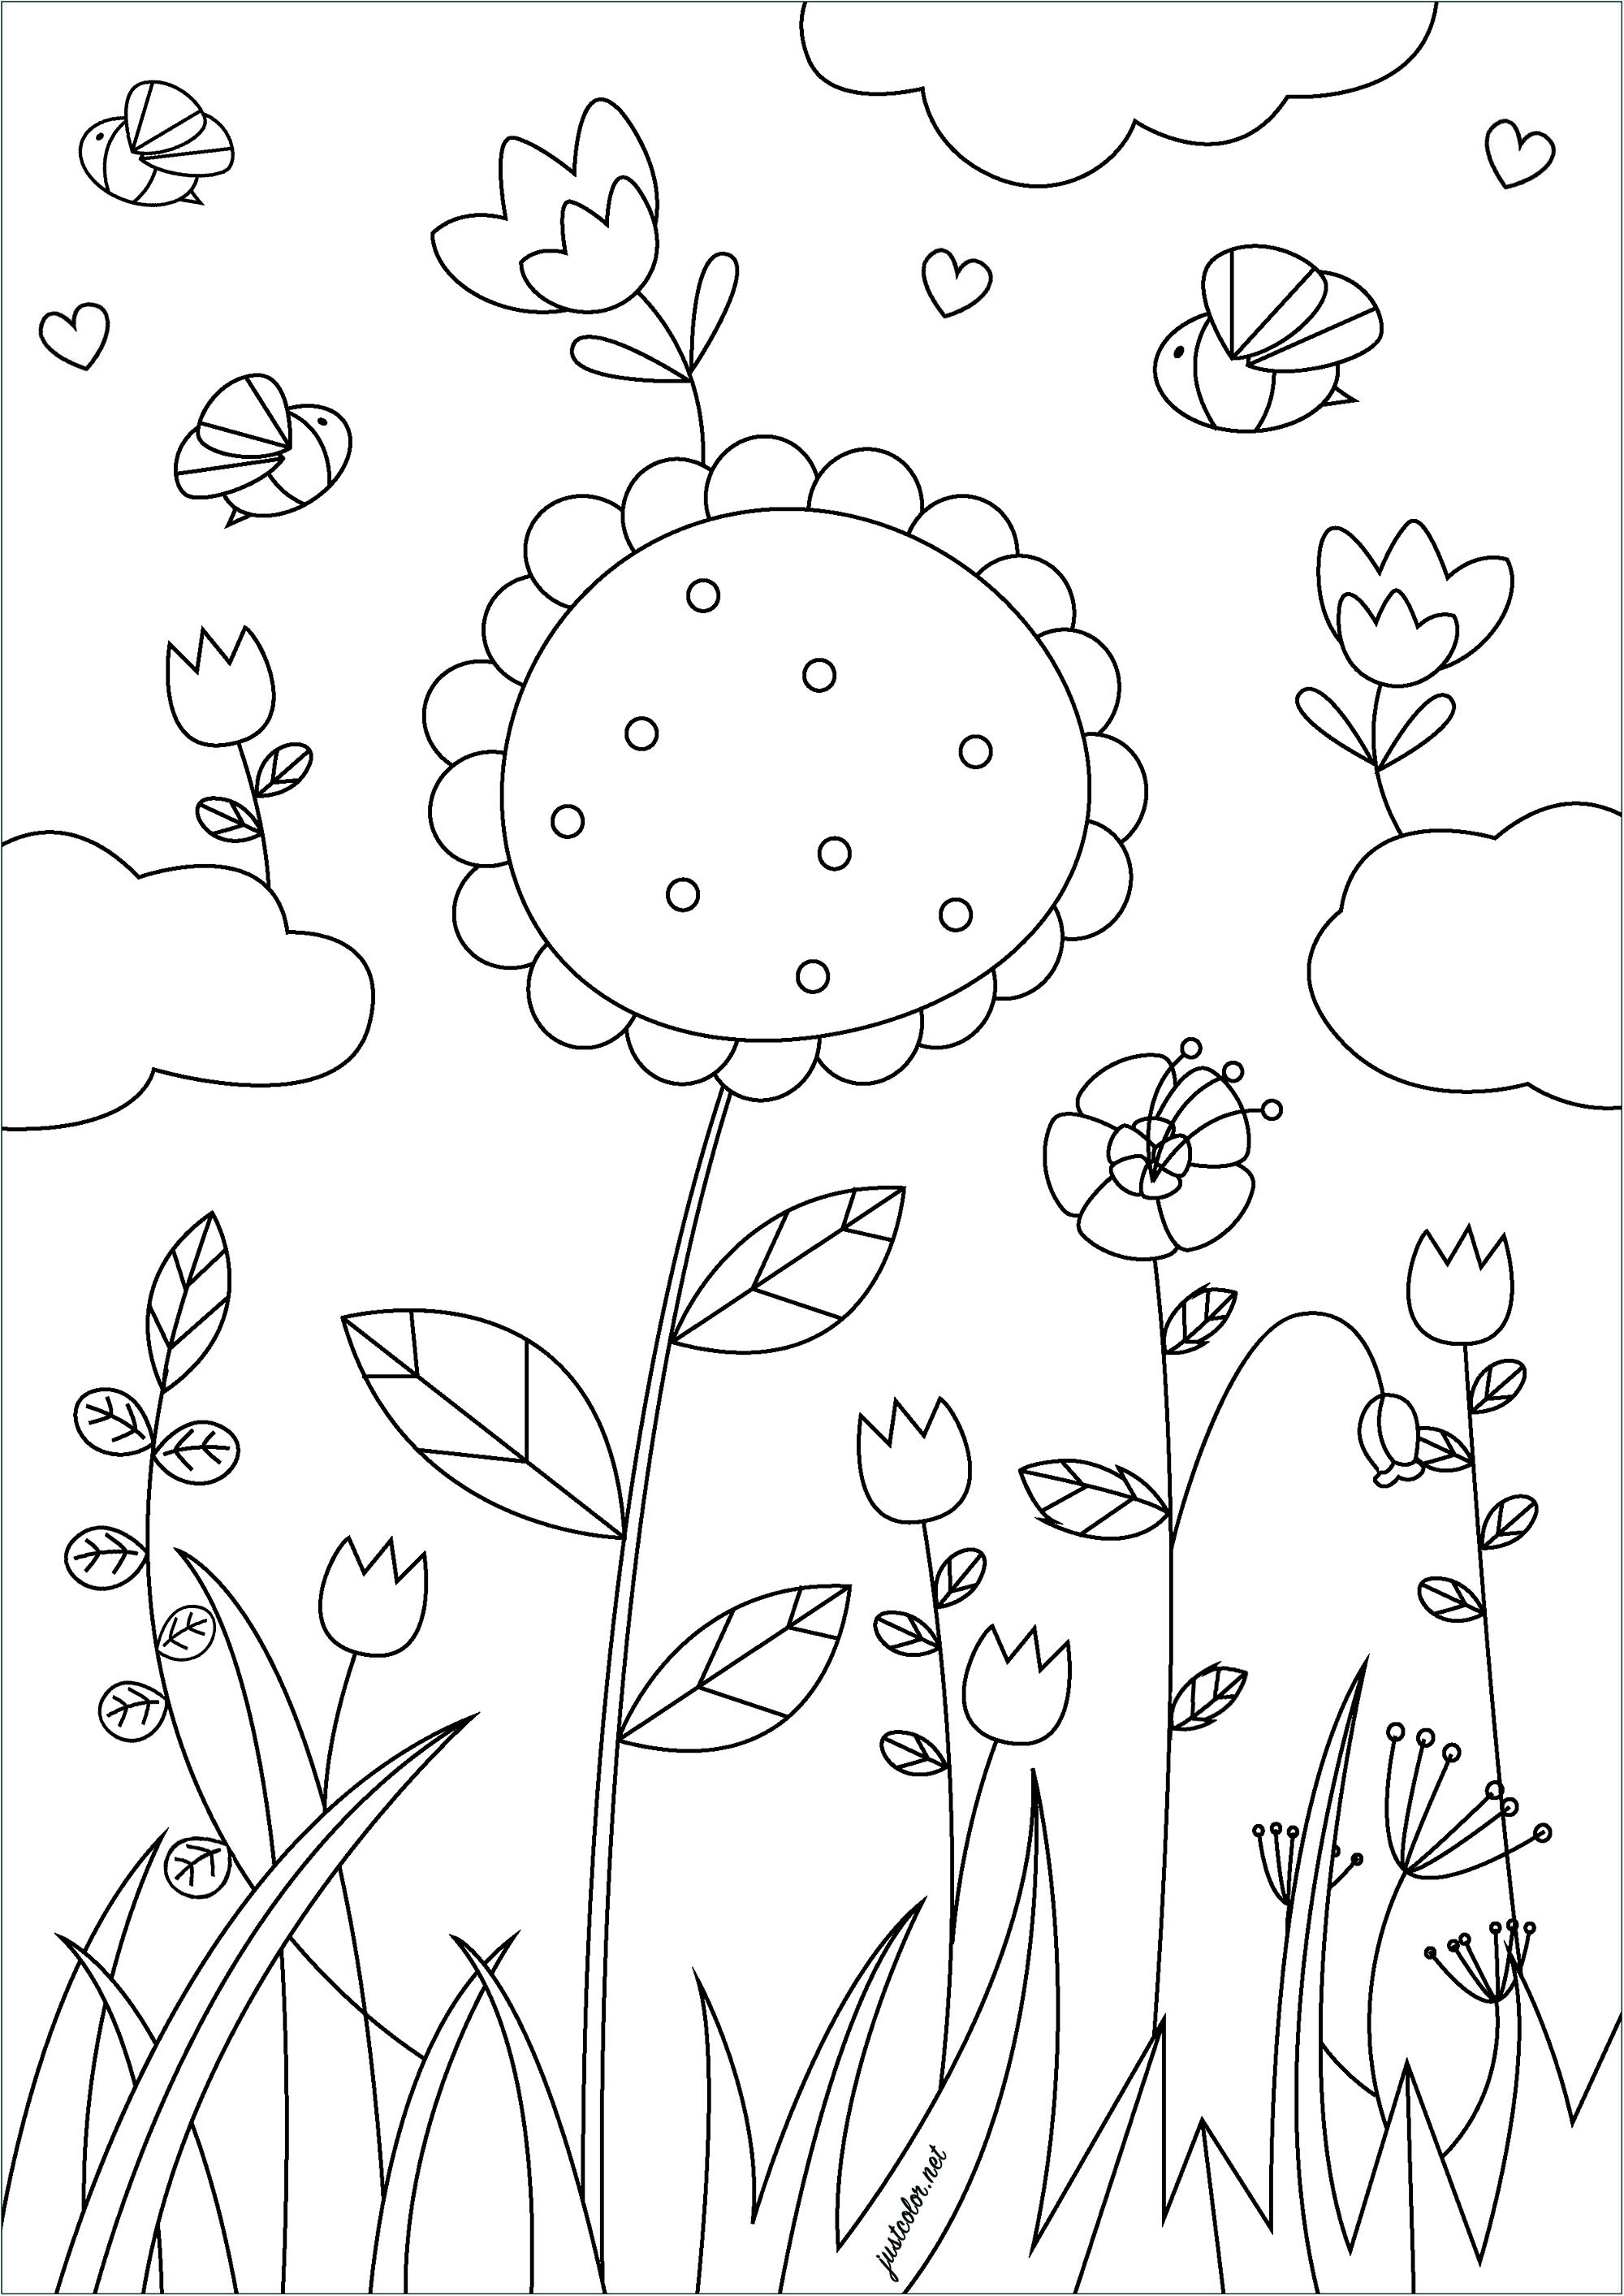 Flores da primavera - Flores e vegetação - Coloring Pages for Adults